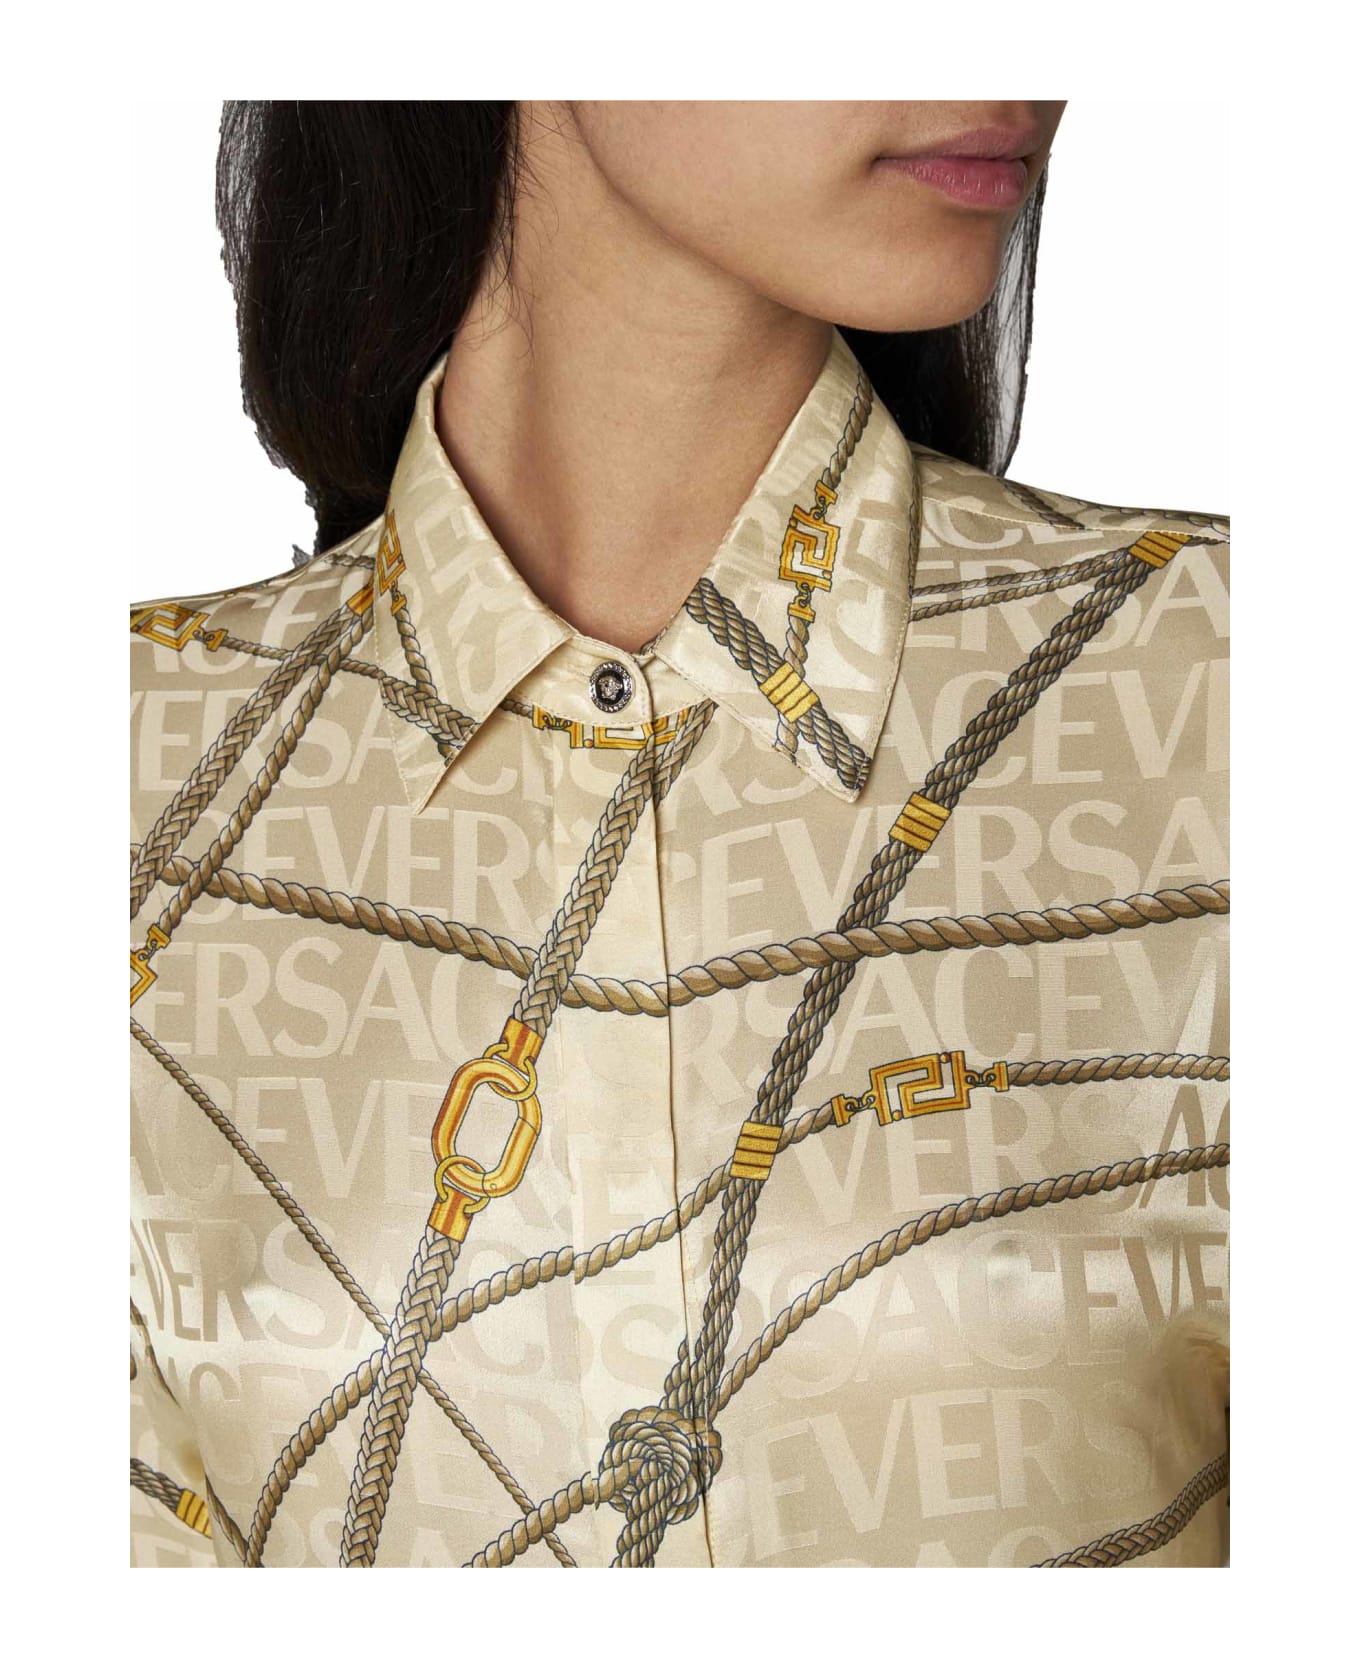 Versace Shirt - Sand gold